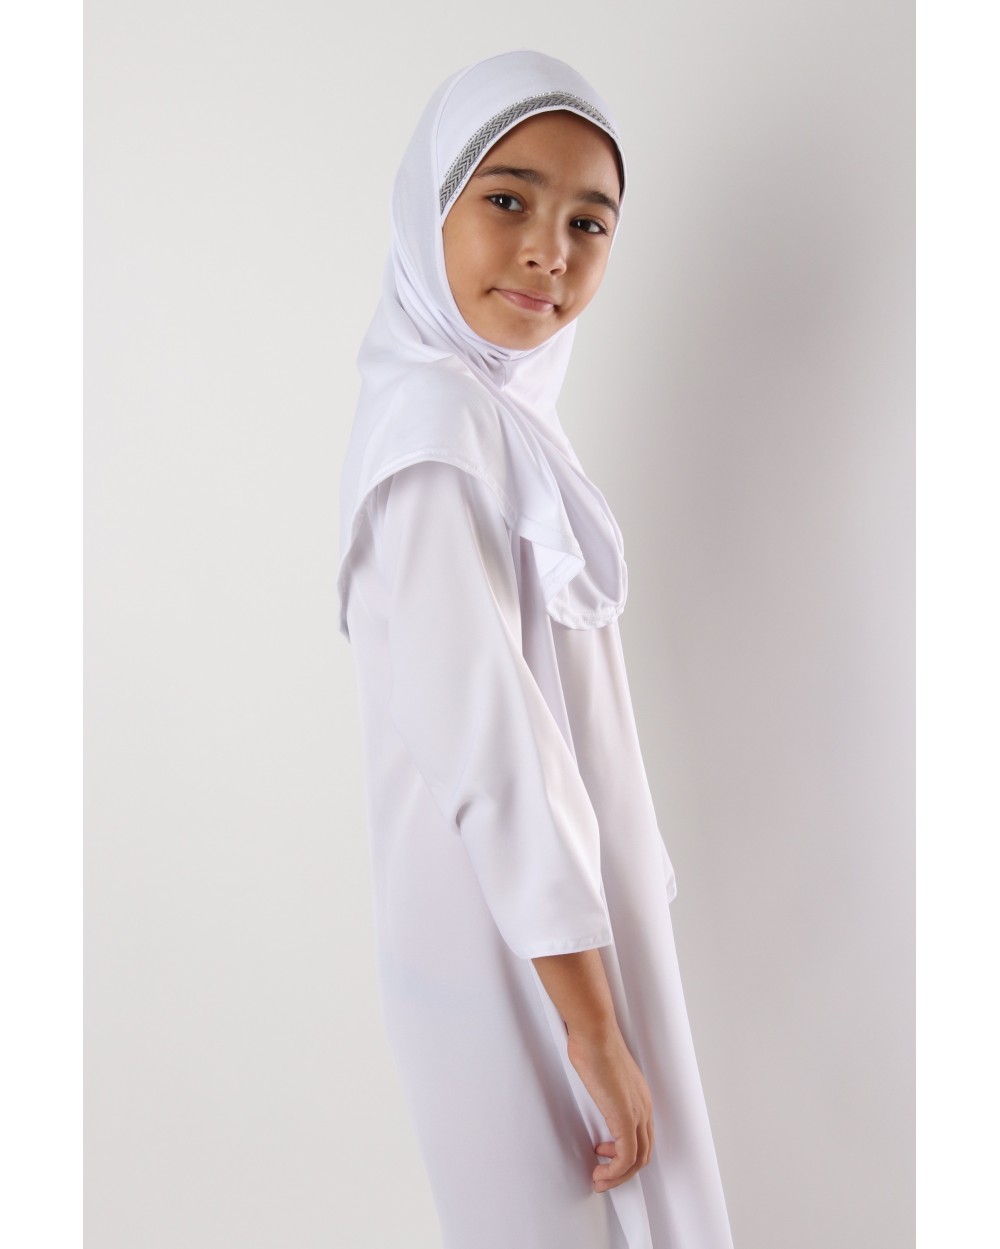 Hijab hirasova pour enfant